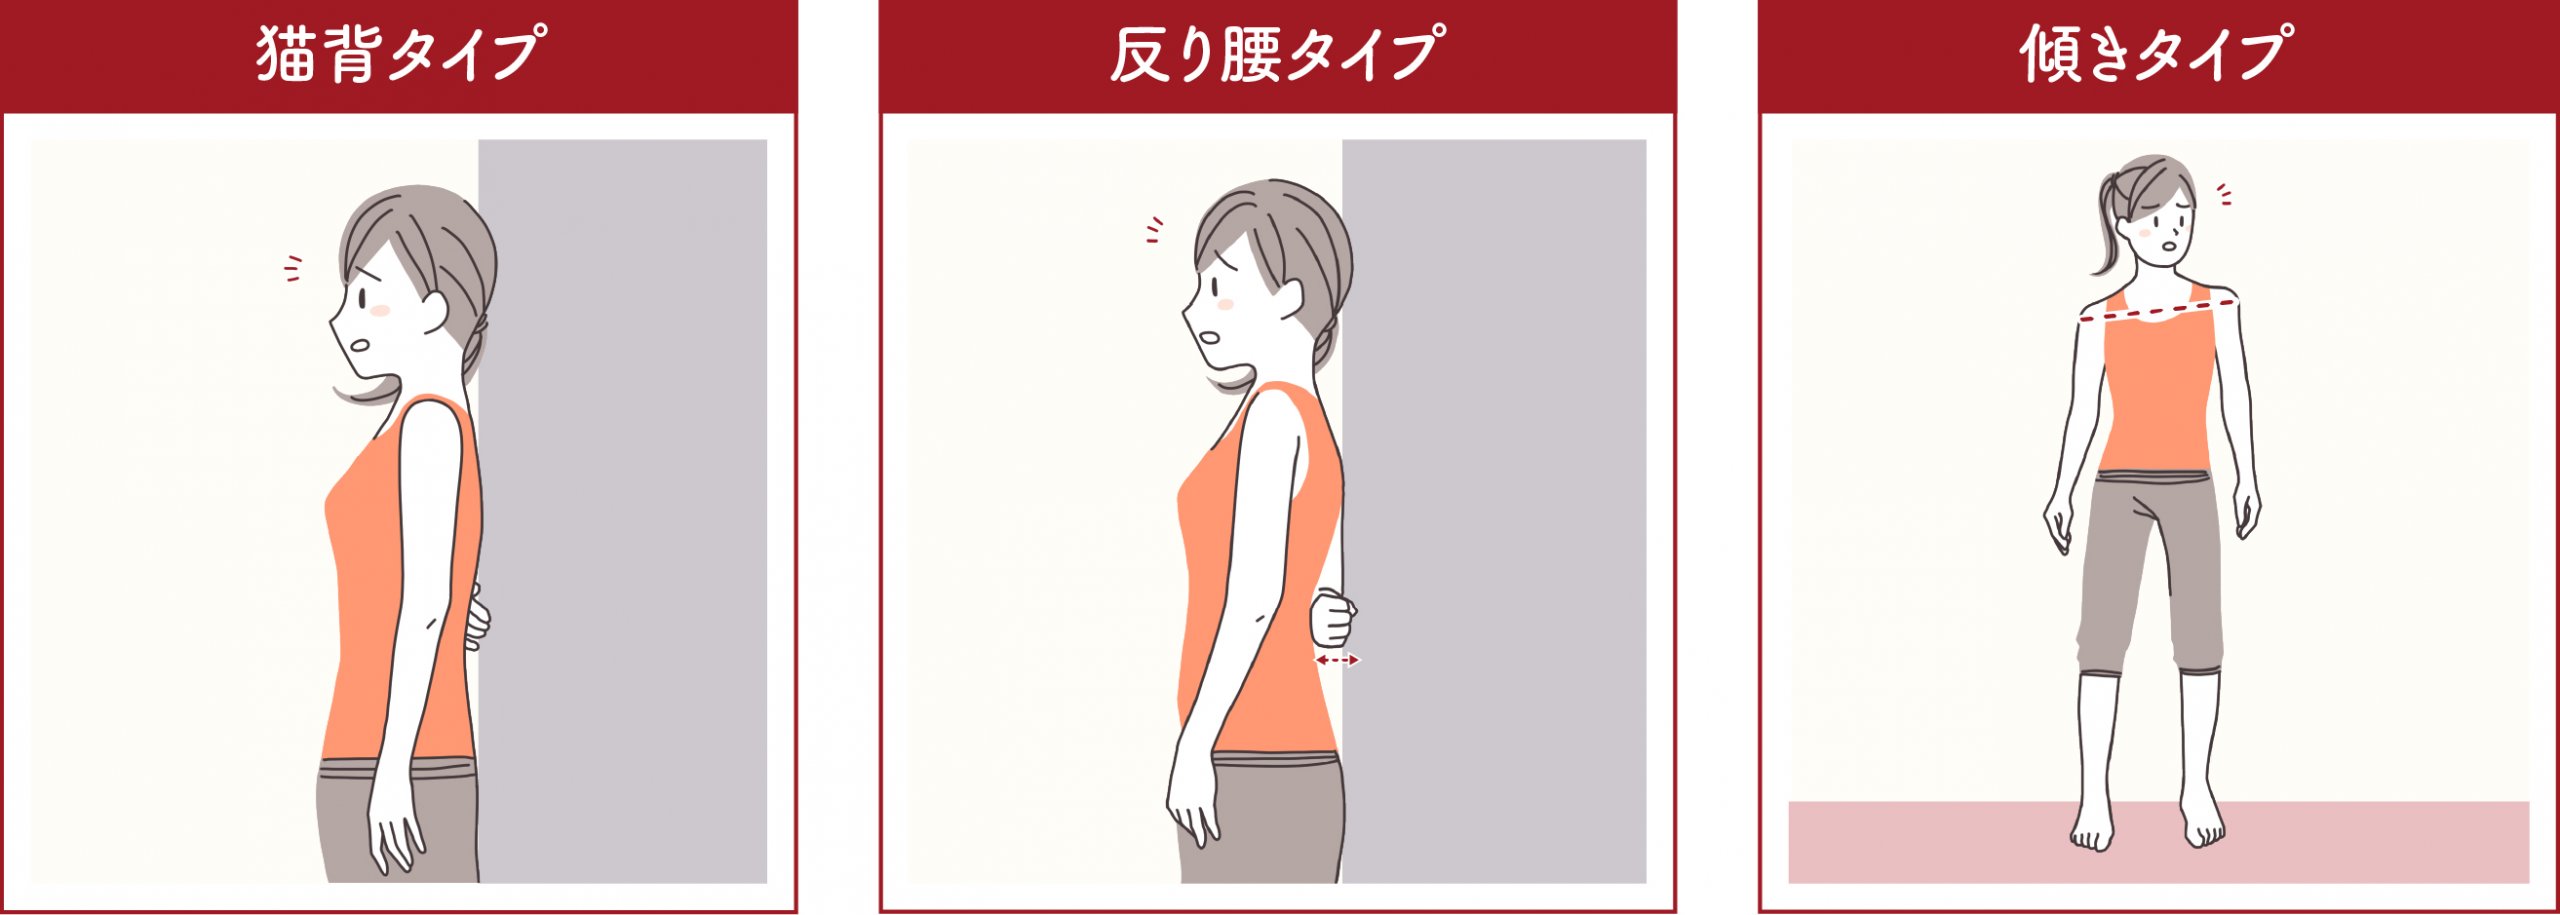 中央区で身体のゆがみからくる腰痛などにお悩みなら 日本橋中央整骨院